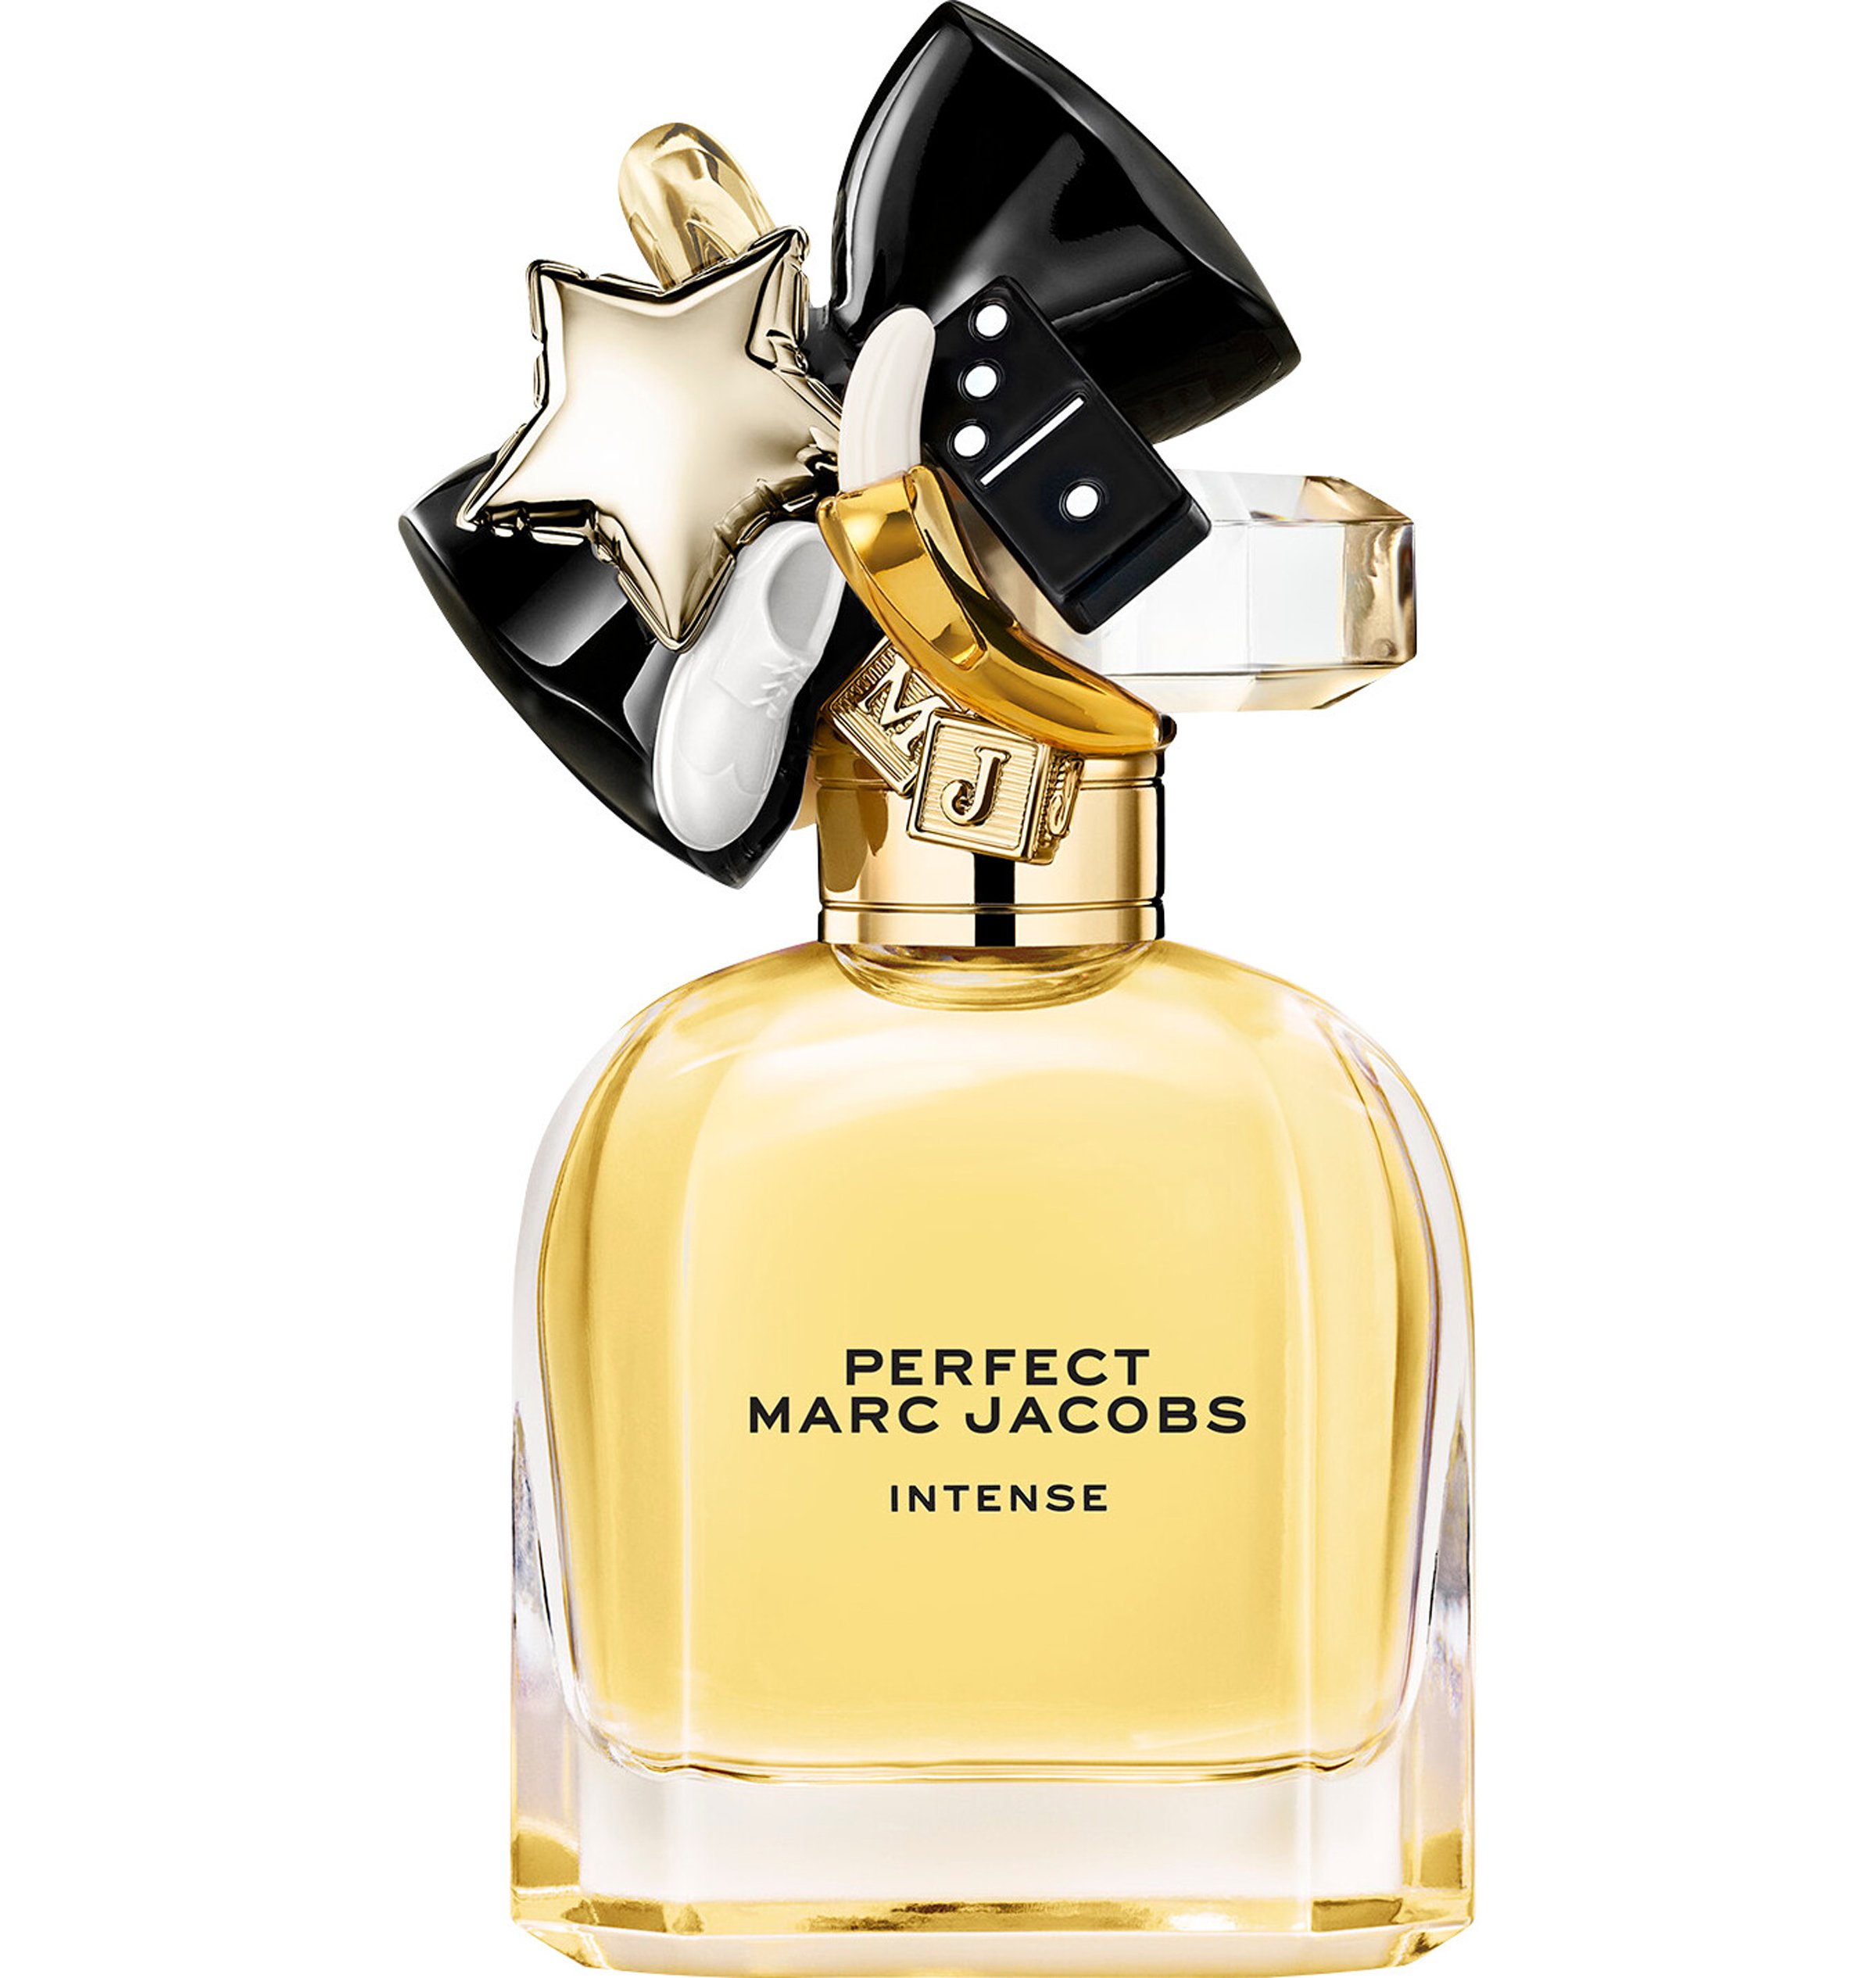 6. Marc Jacobs Perfect Intense Eau de Parfum Spray €64.80 for 30ml